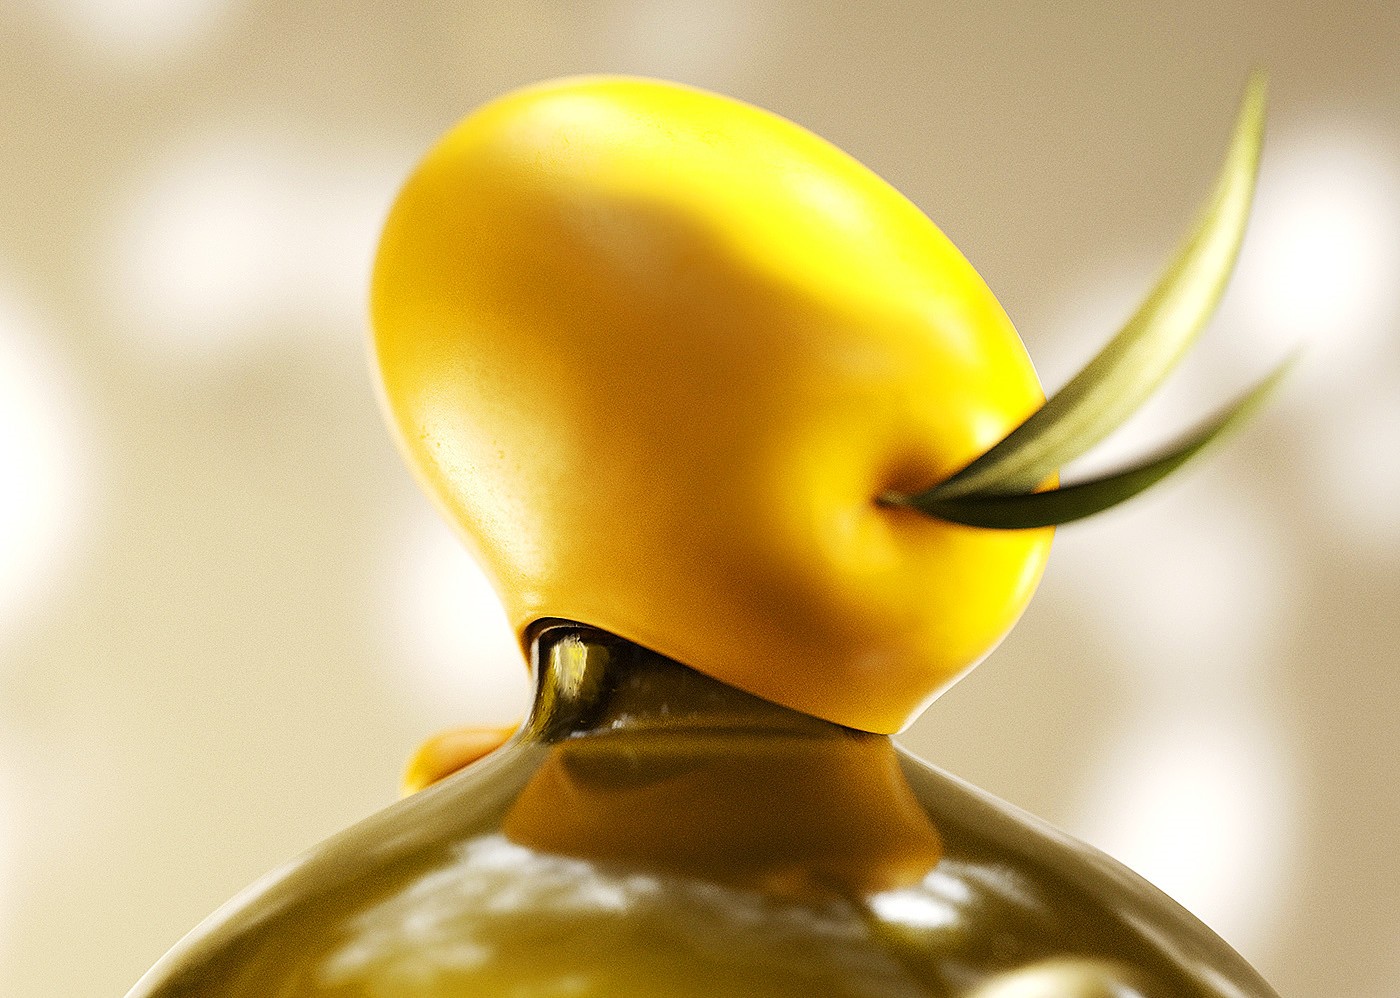 特级初榨橄榄油包装设计作品鉴赏 